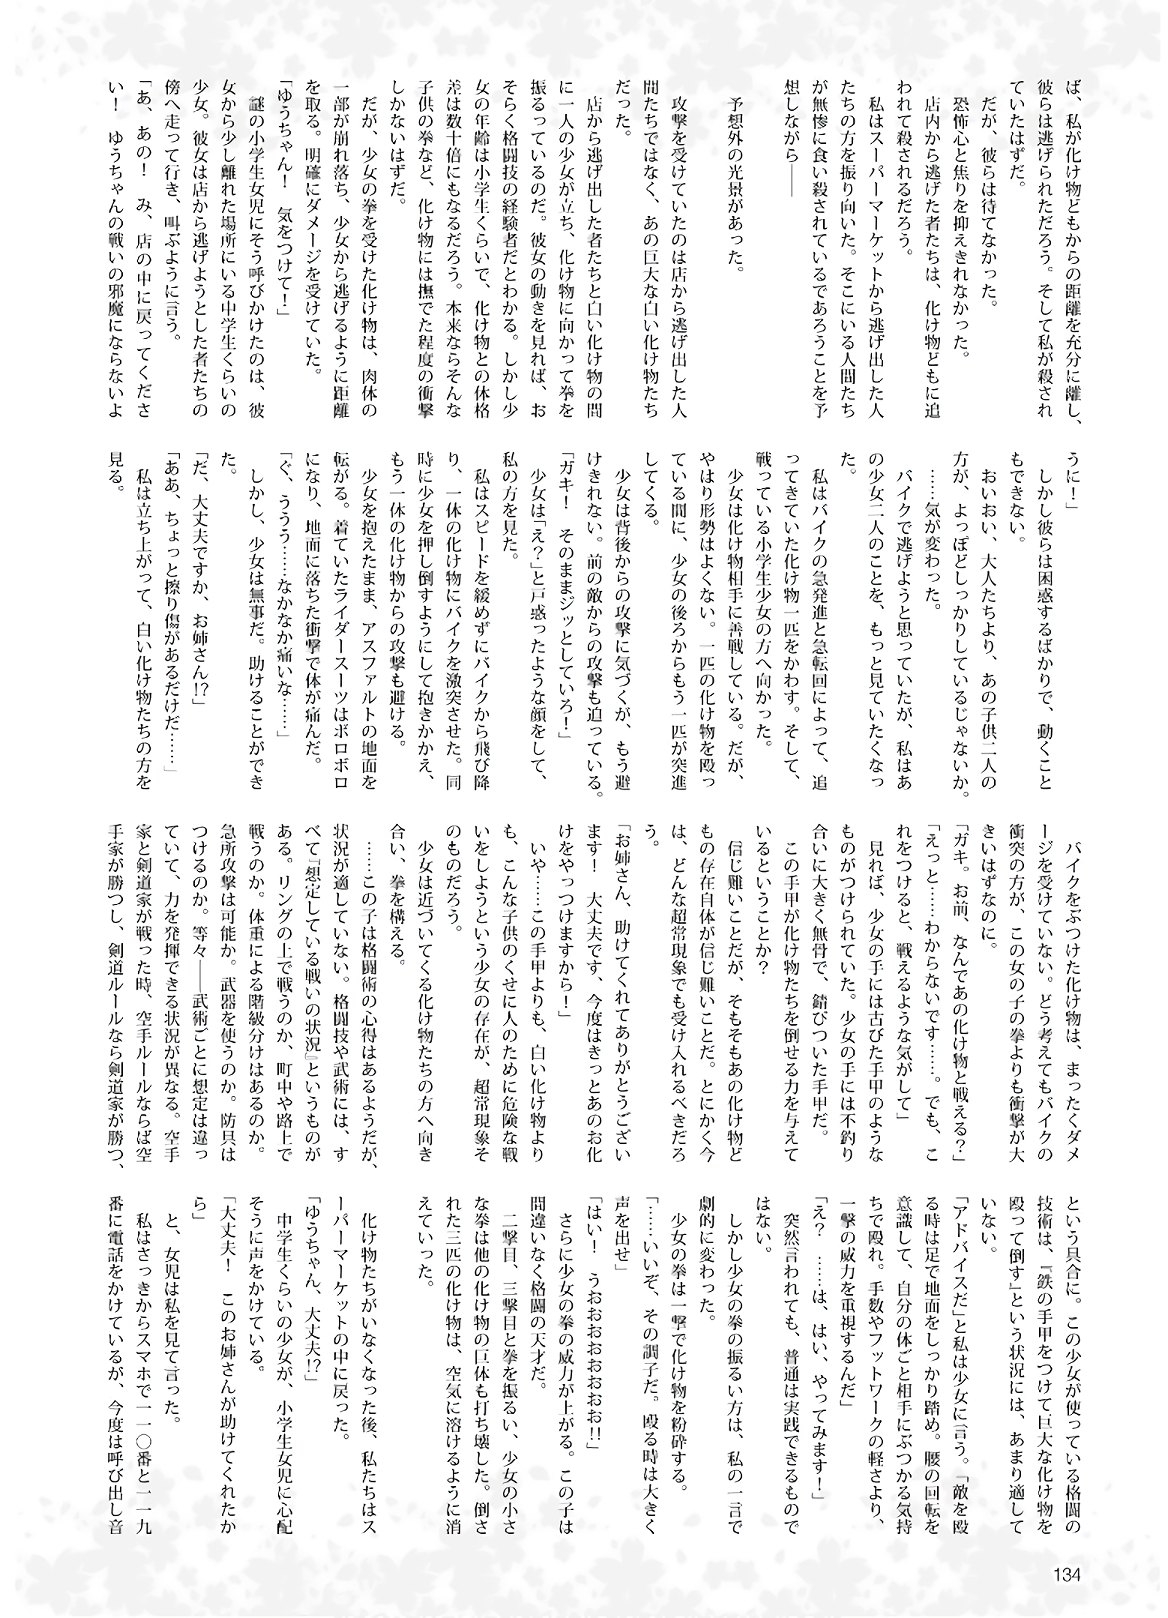 Dengeki G's Magazine #286 - May 2021 131